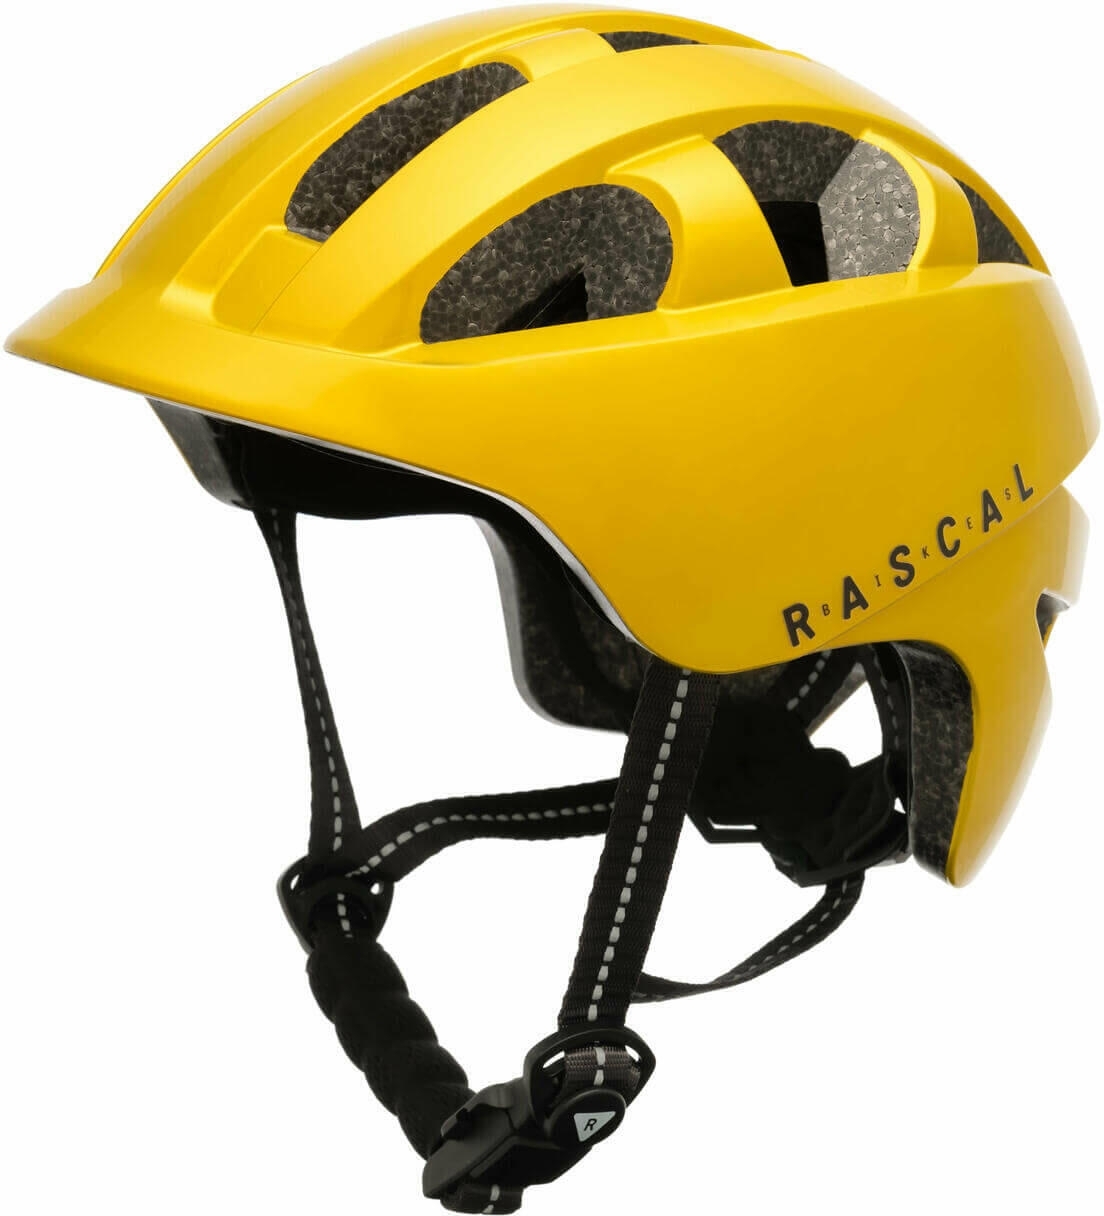 Rascal helma - Gold 51-55